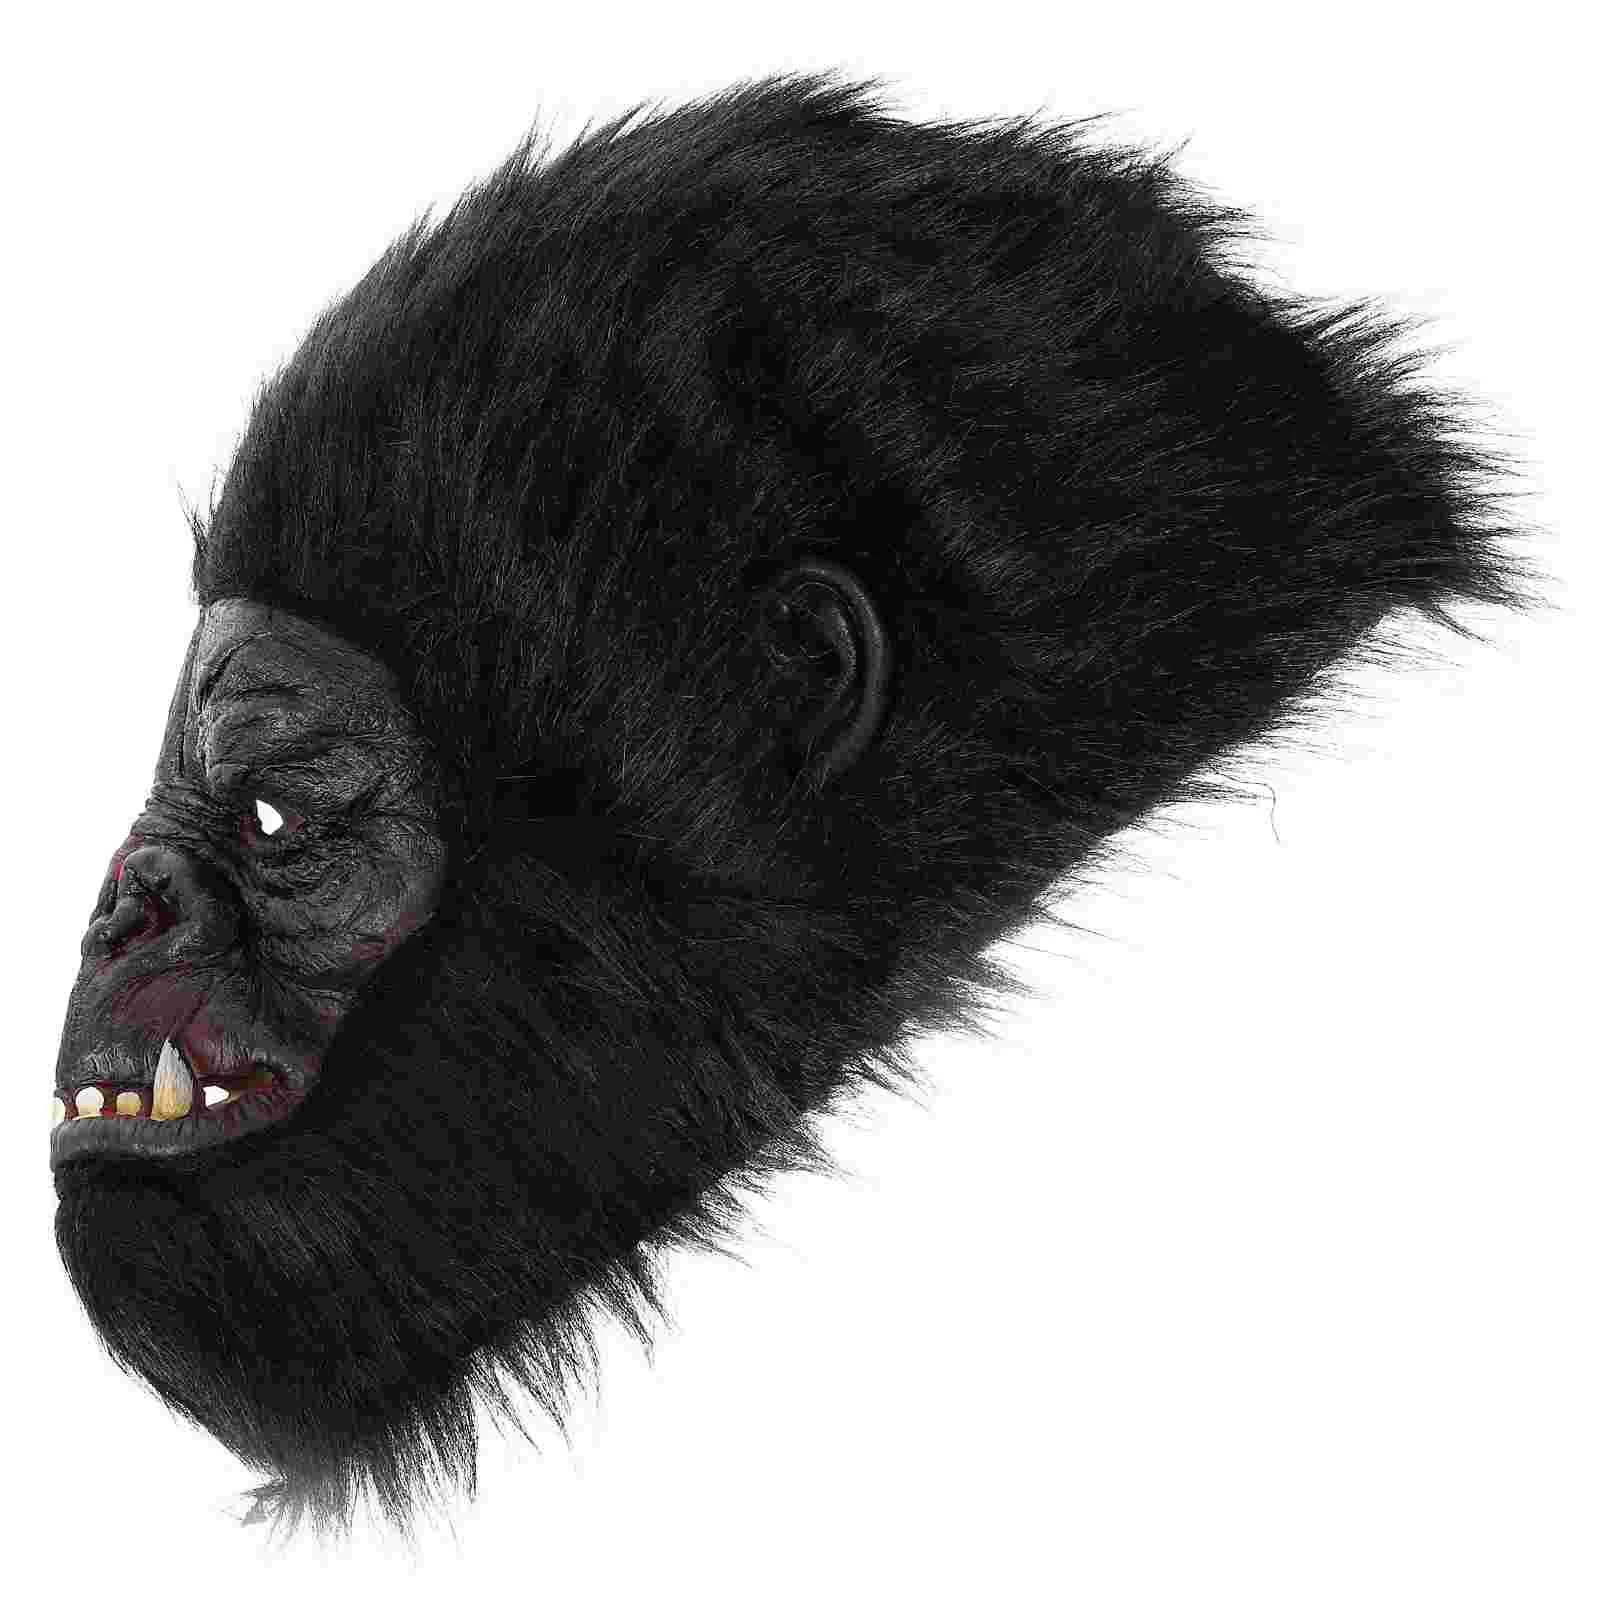 

Маска на голову в виде животного на Хэллоуин, головной убор гориллы для маскарада, Хэллоуина, аксессуары для косплея